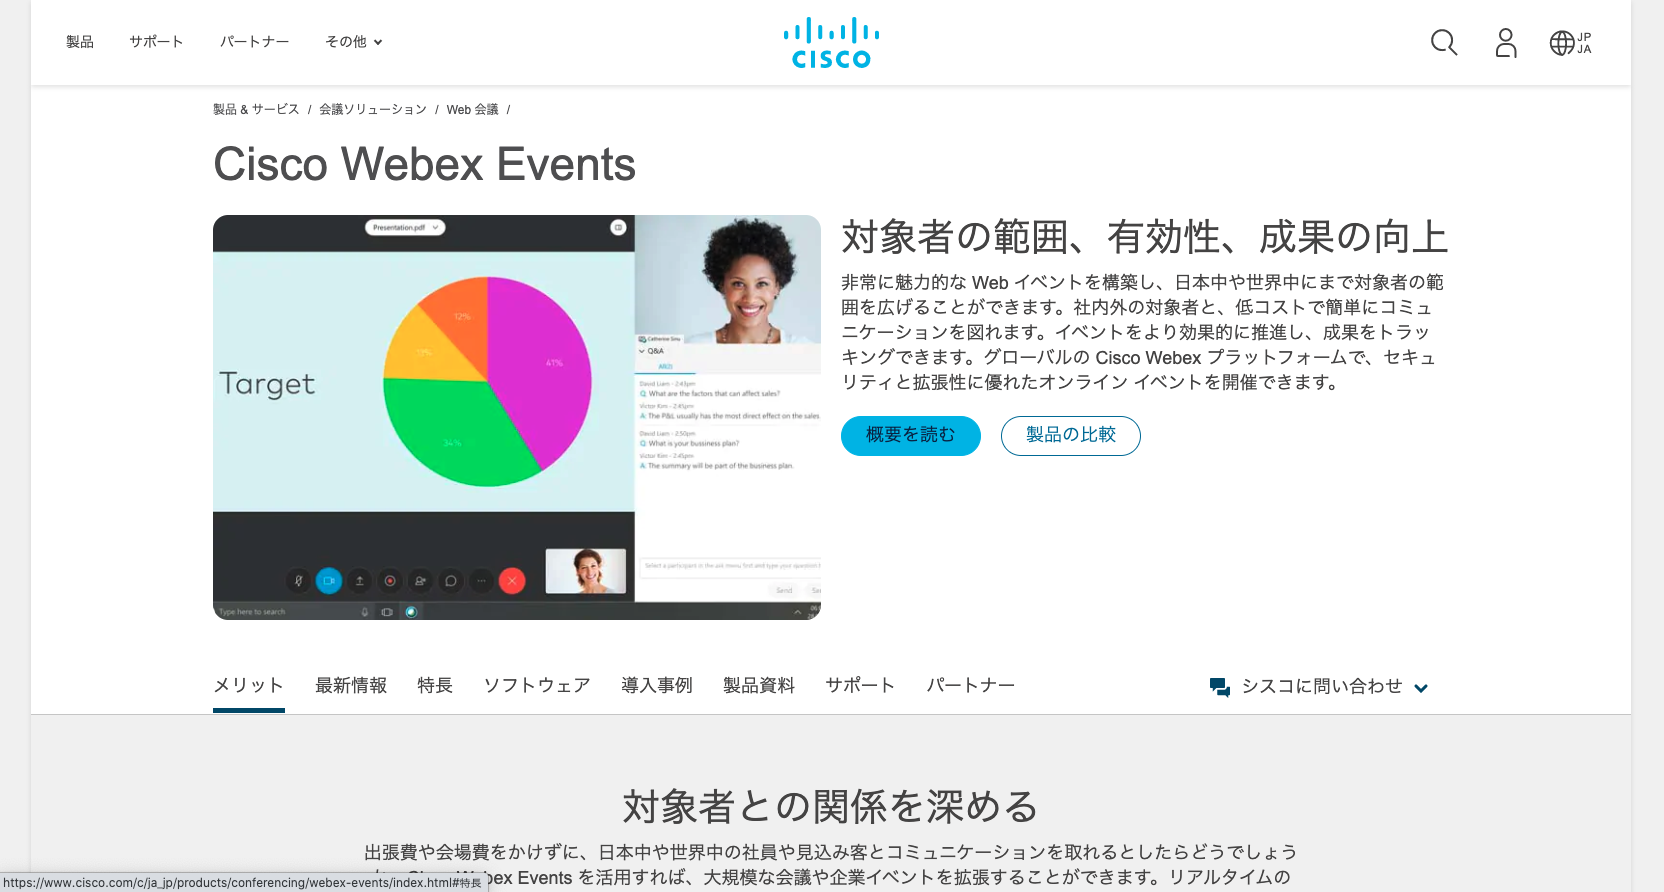 ウェビナーツール4：Cisco Webex Events